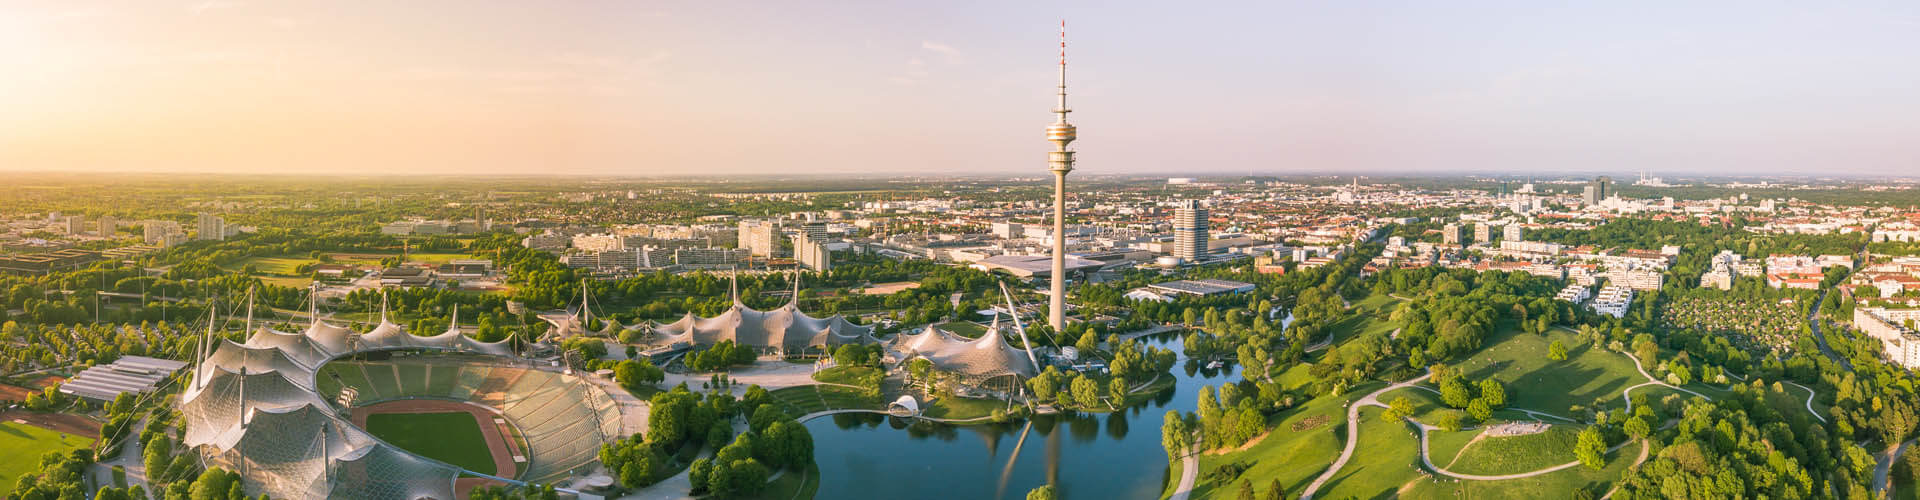 München, Deutschland: Blick auf den Olympiapark